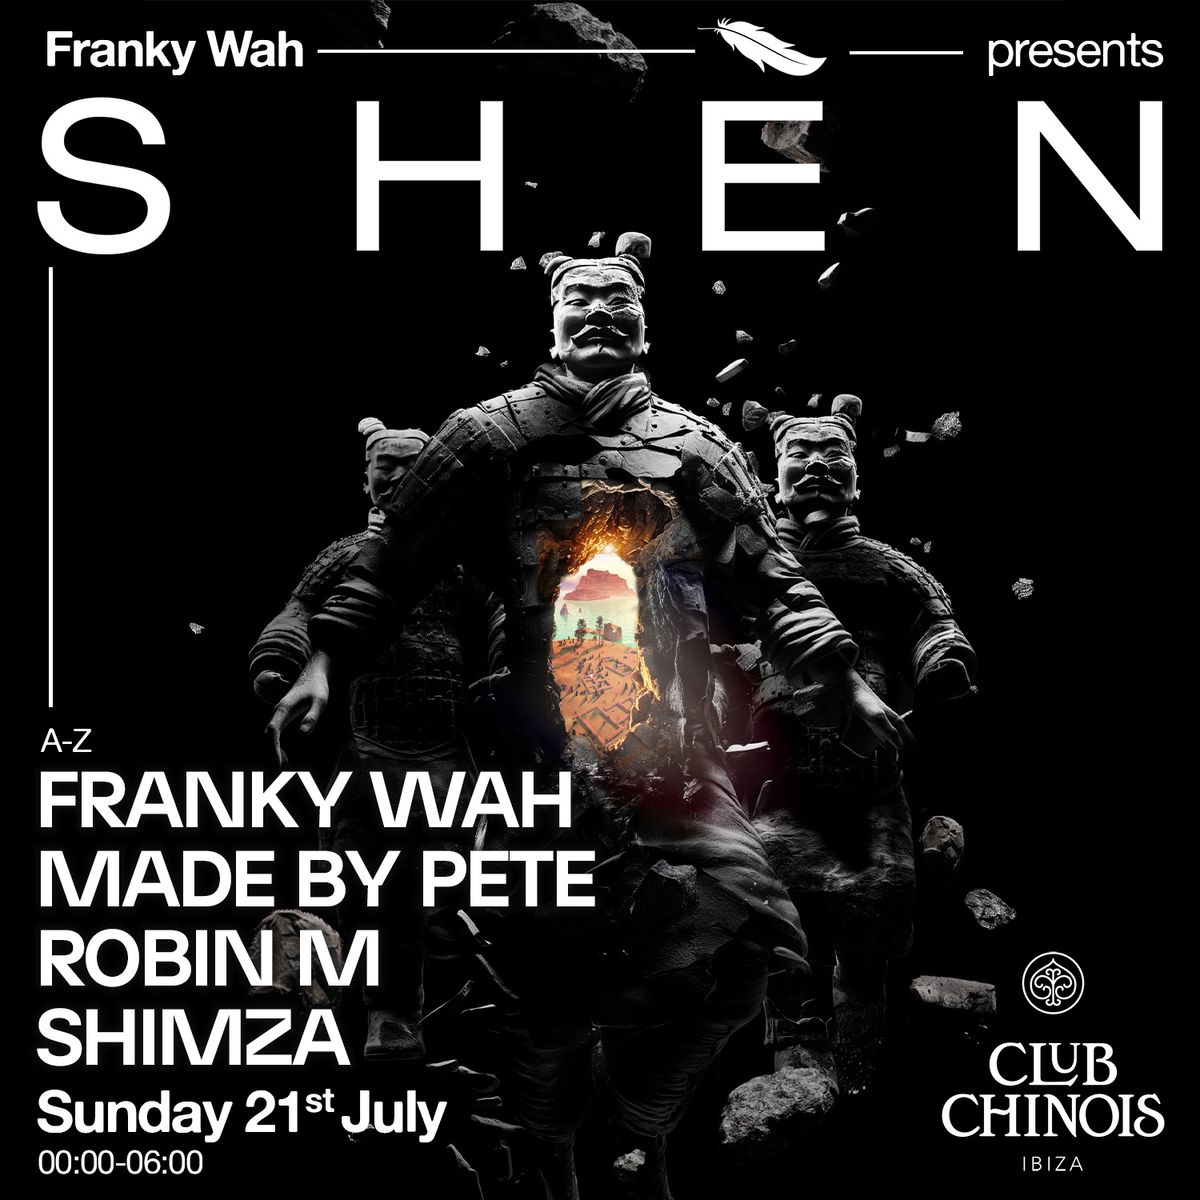 Franky Wah presents SH\u00c8N